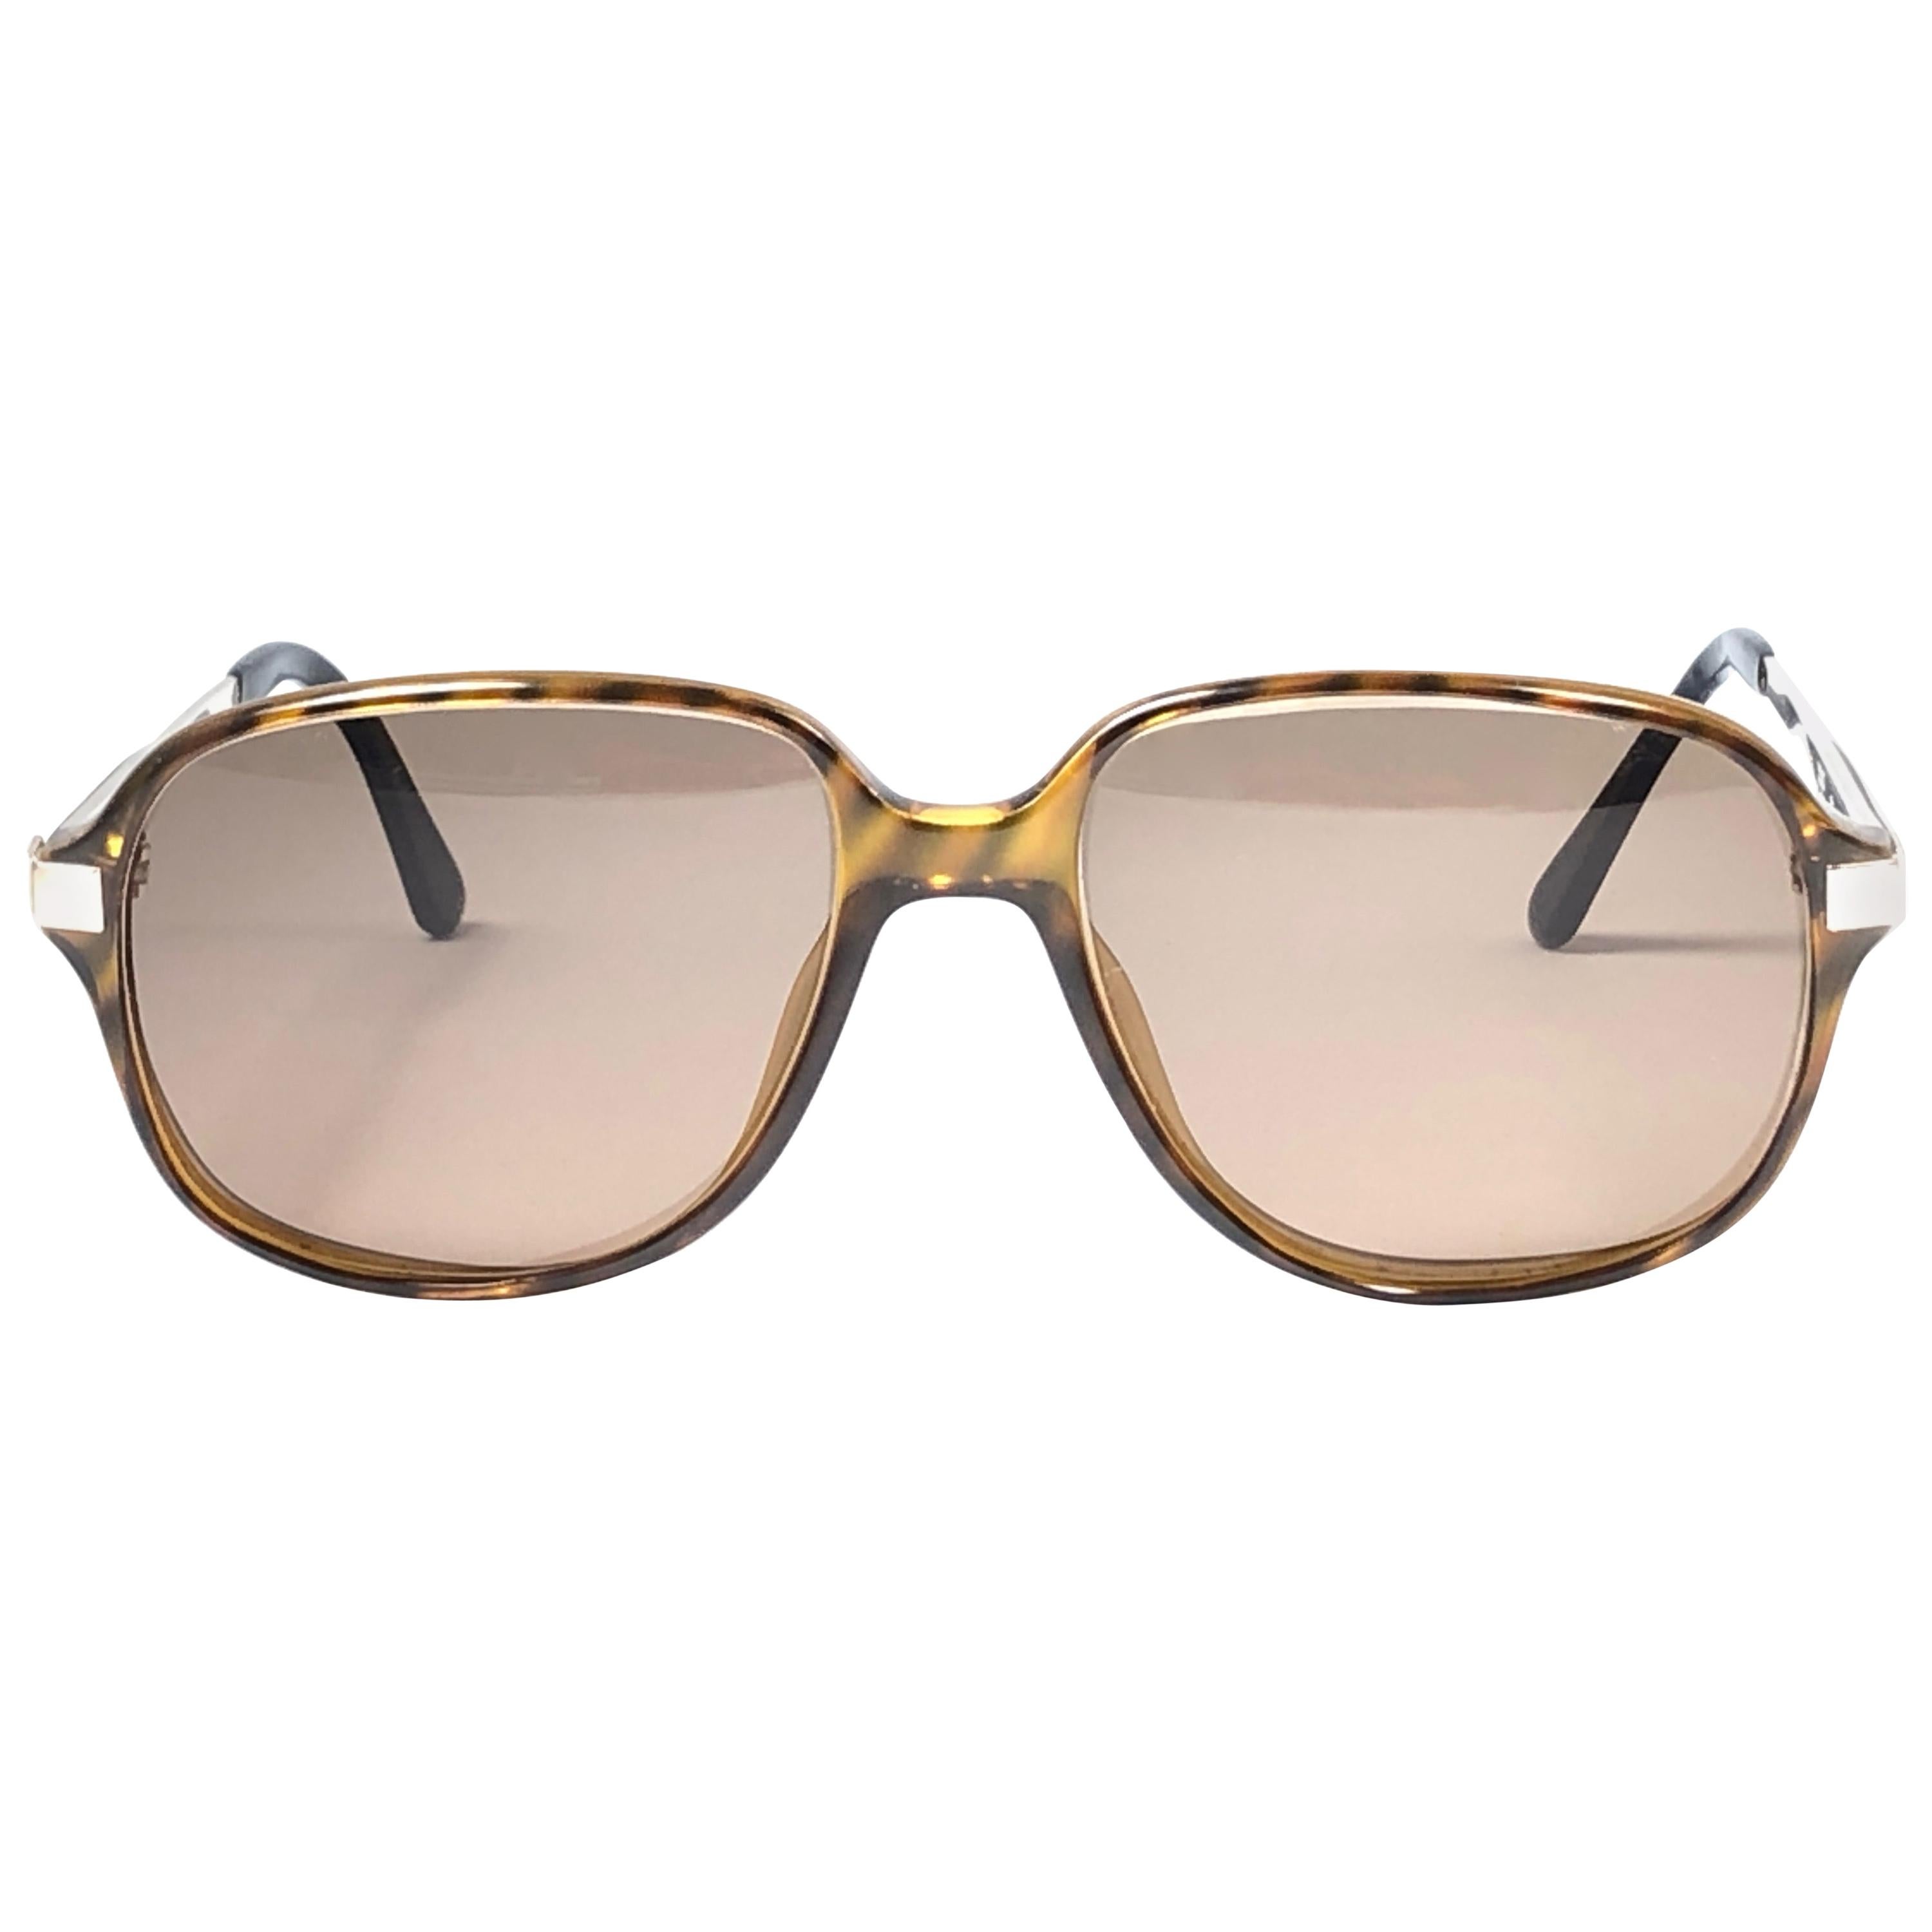 Neu, Vintage Dunhill 6047, Sonnenbrille mit echten Holzbesatz und Linsen, Österreich